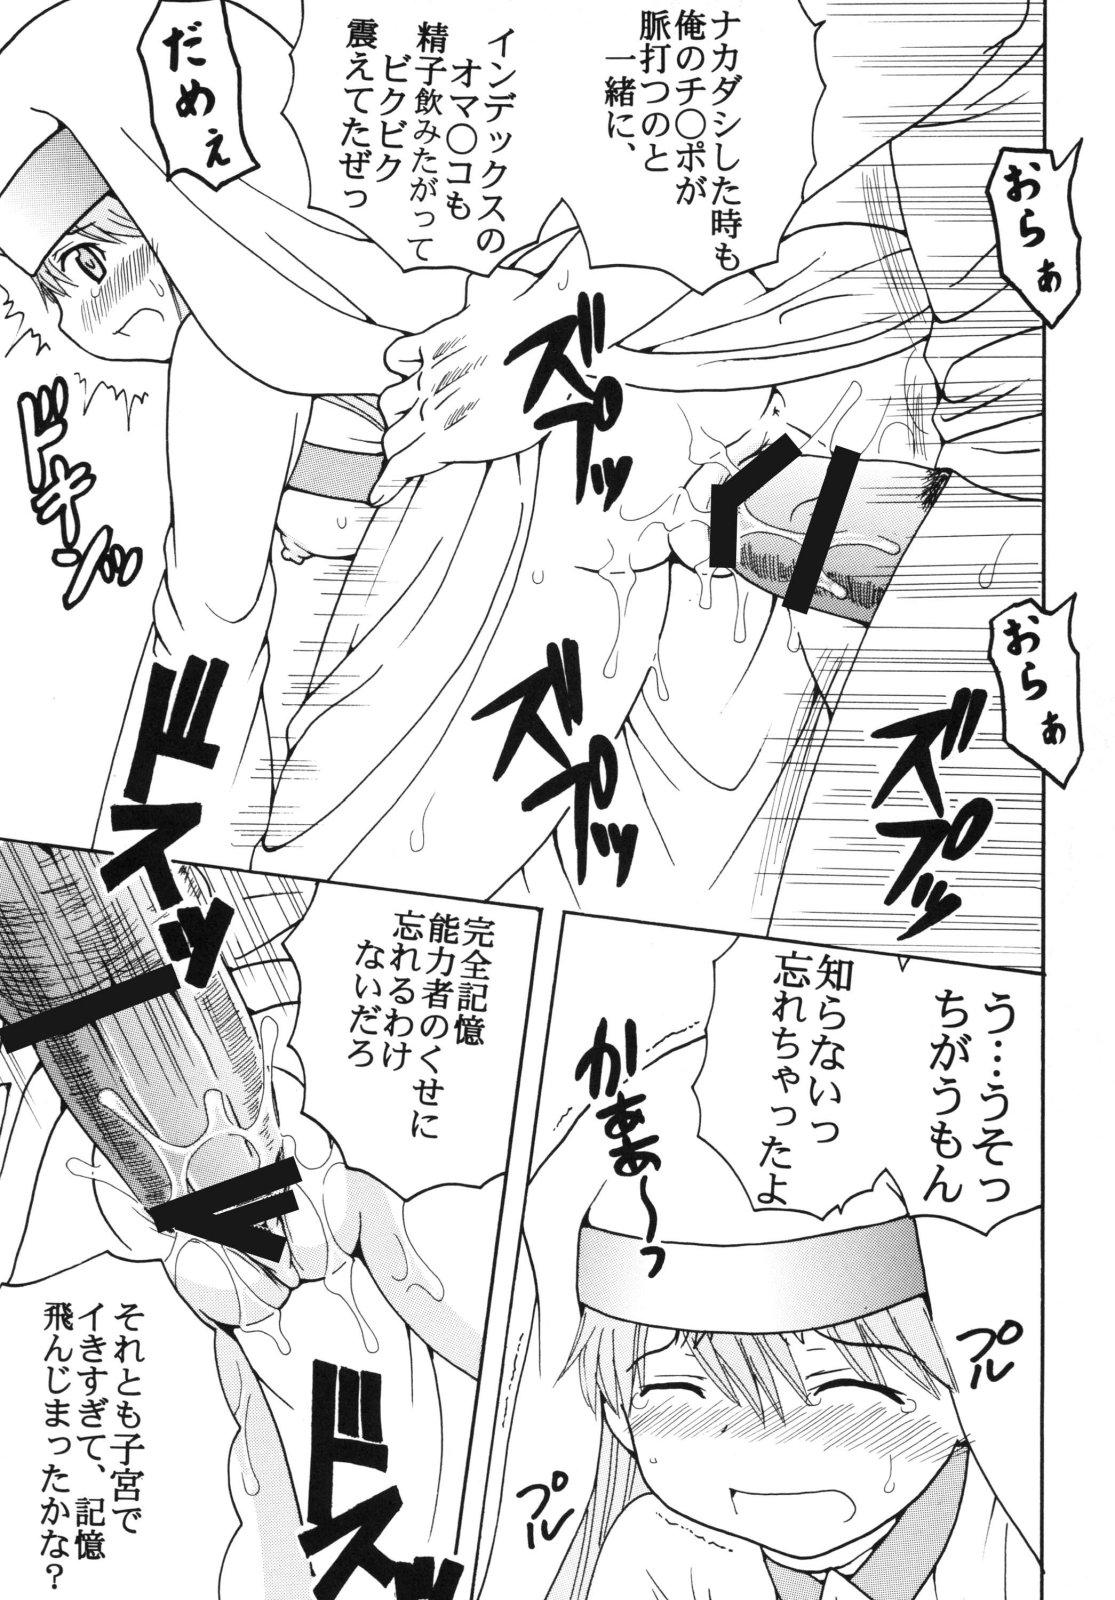 Toaru Otaku no Index #2 44